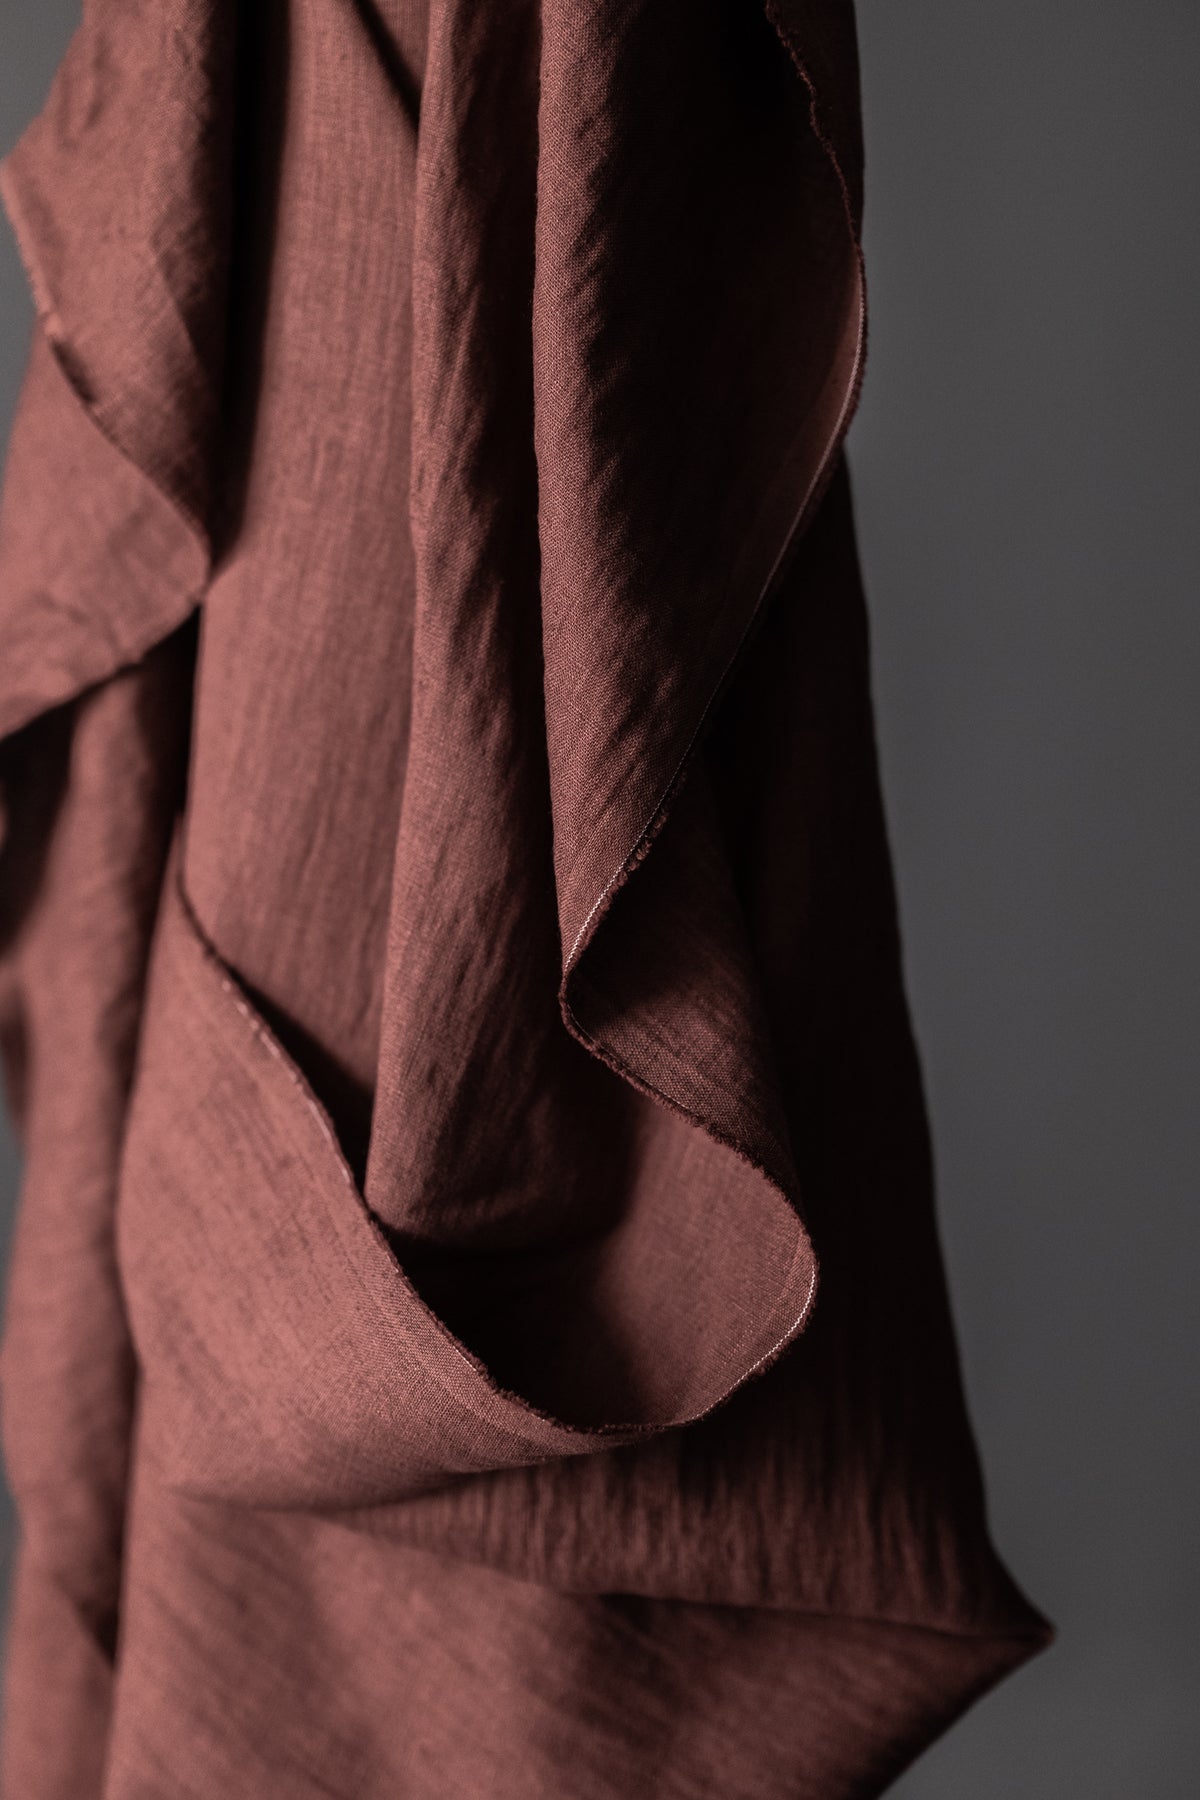 European Laundered Linen 185gsm in Oxblood | Merchant & Mills designer sewing fabric | Stitch Piece Loop | Online Fabric Store | Designer Sewing Fabric & Supplies | Noosa Heads